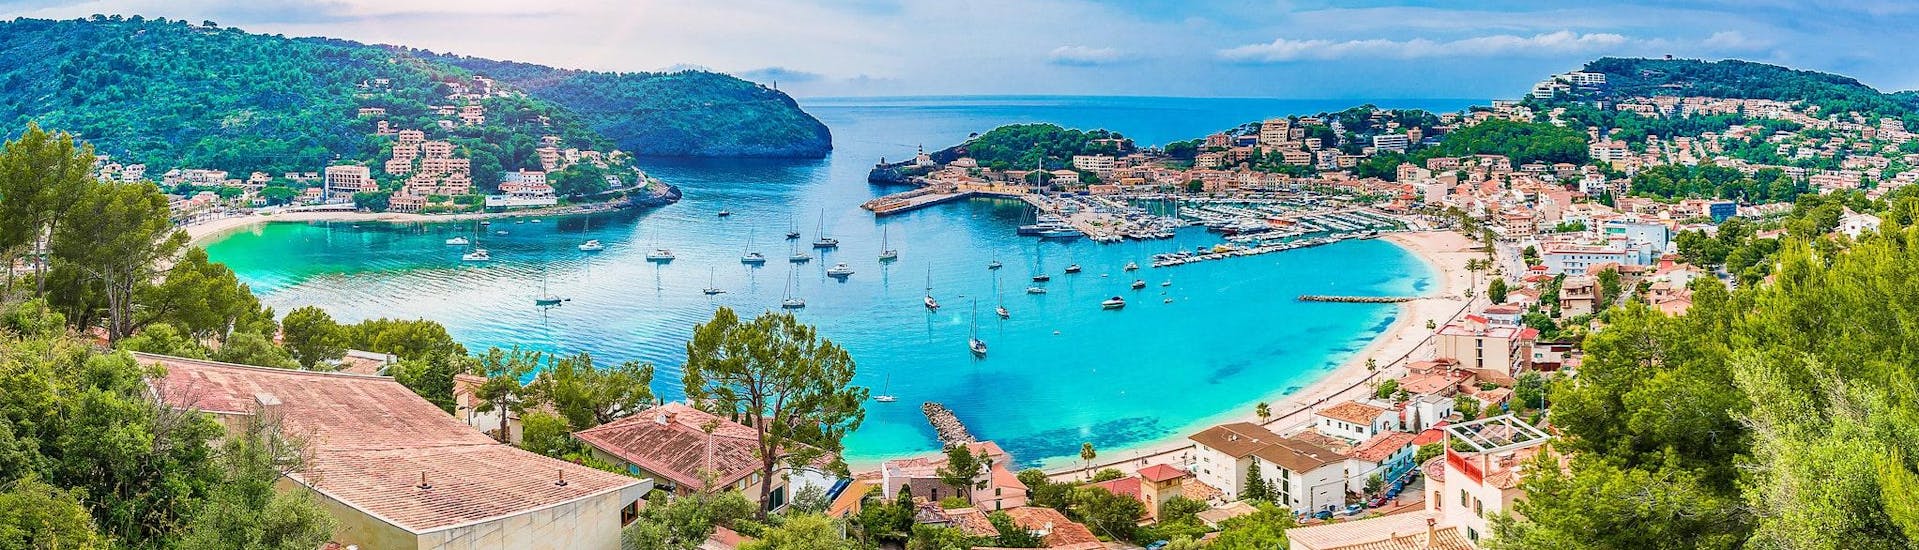 Una hermosa vista sobre Port de Sollér, desde donde se pueden iniciar maravillosas paseos en barco por la costa oeste de Mallorca.